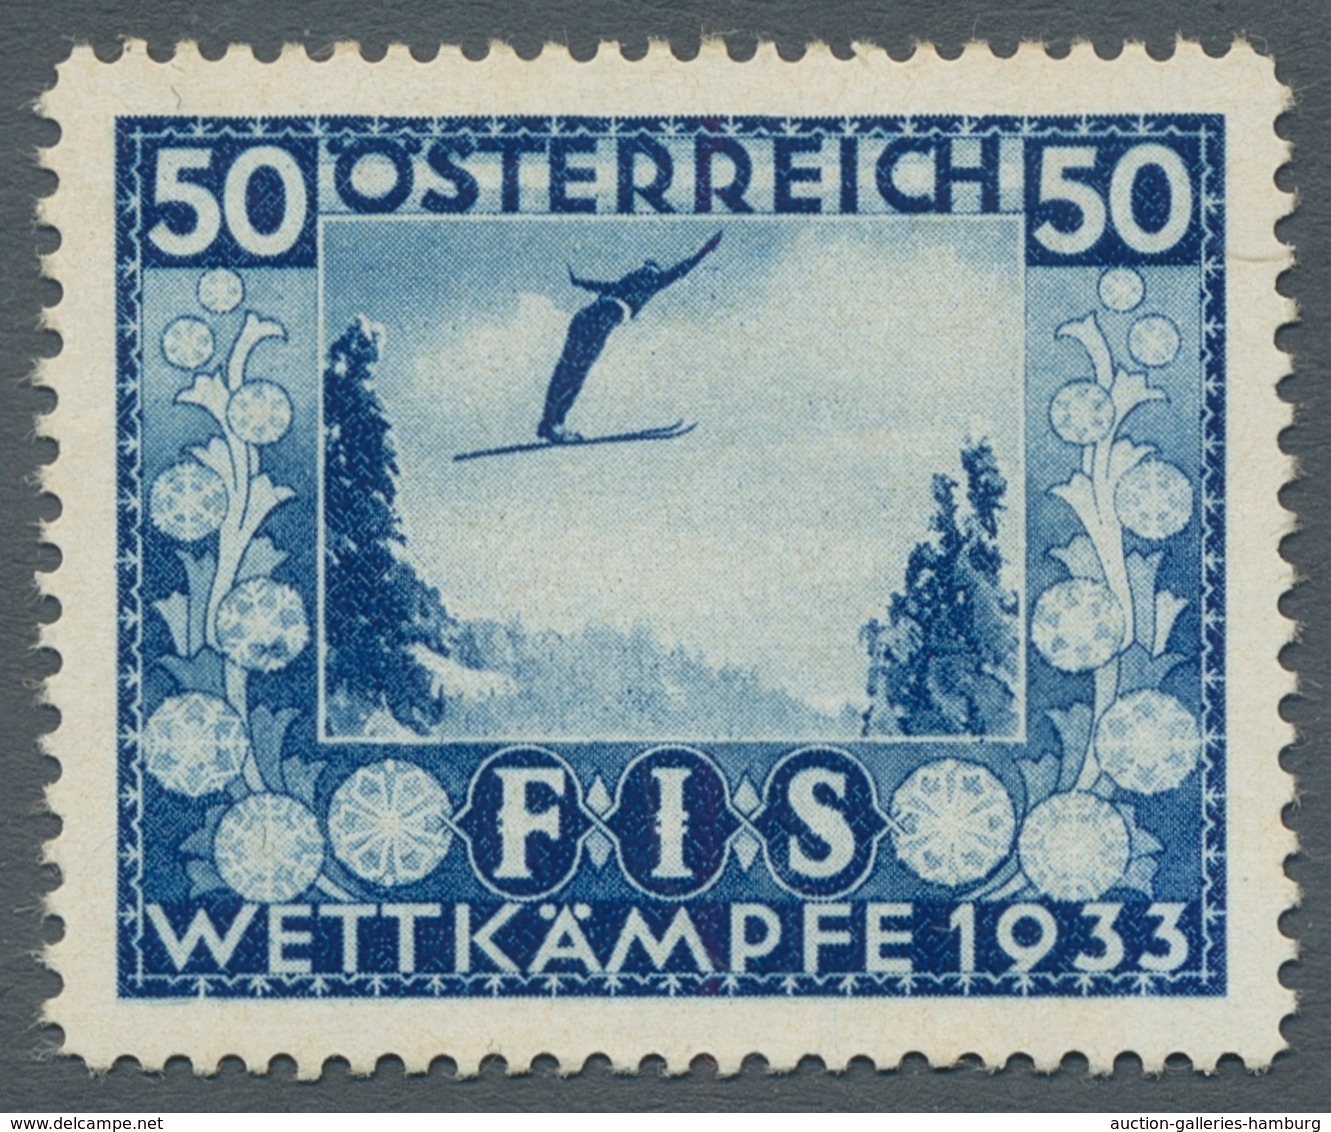 Österreich: 1850-1994 ca, sehr schöne, umfangreiche postfrische Sammlung. Im Anfangsbereich einige N